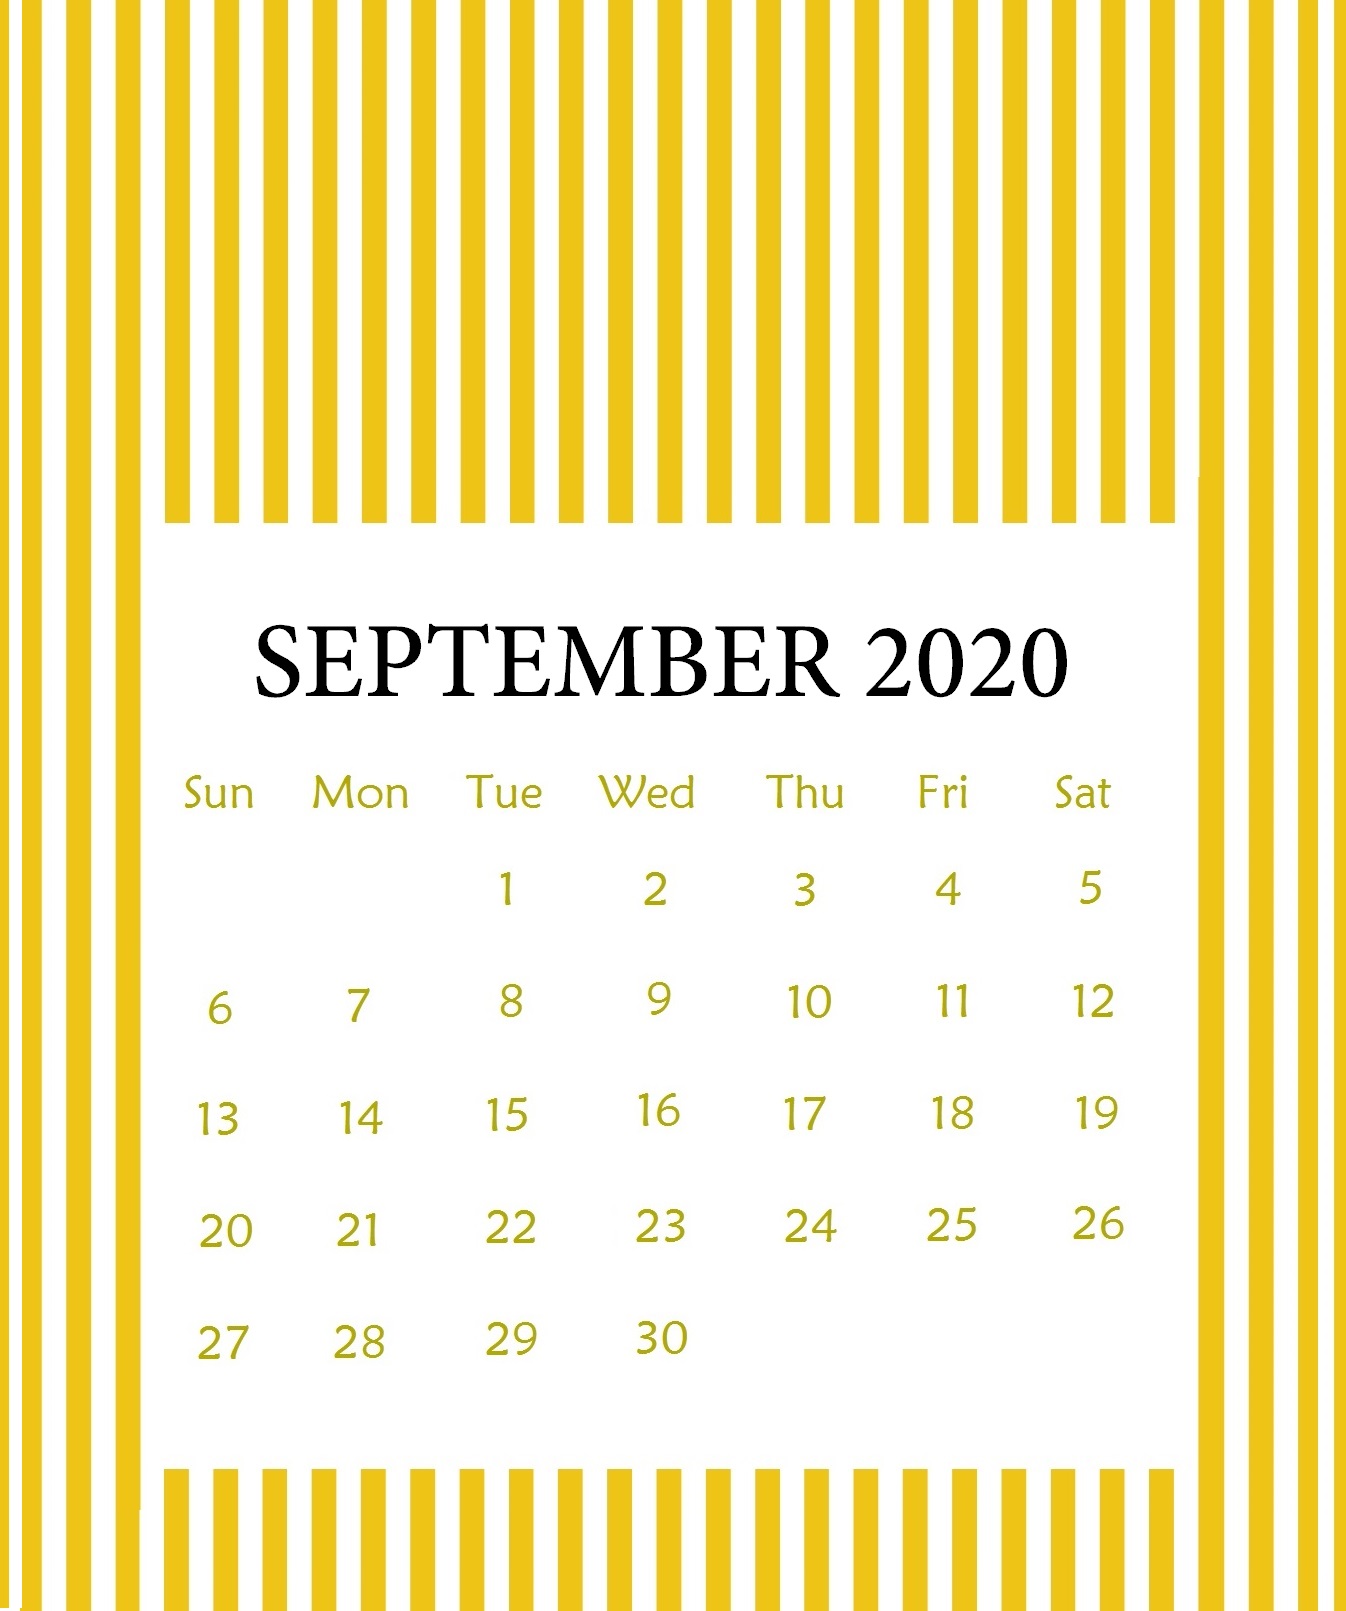 September 2020 Wall Calendar